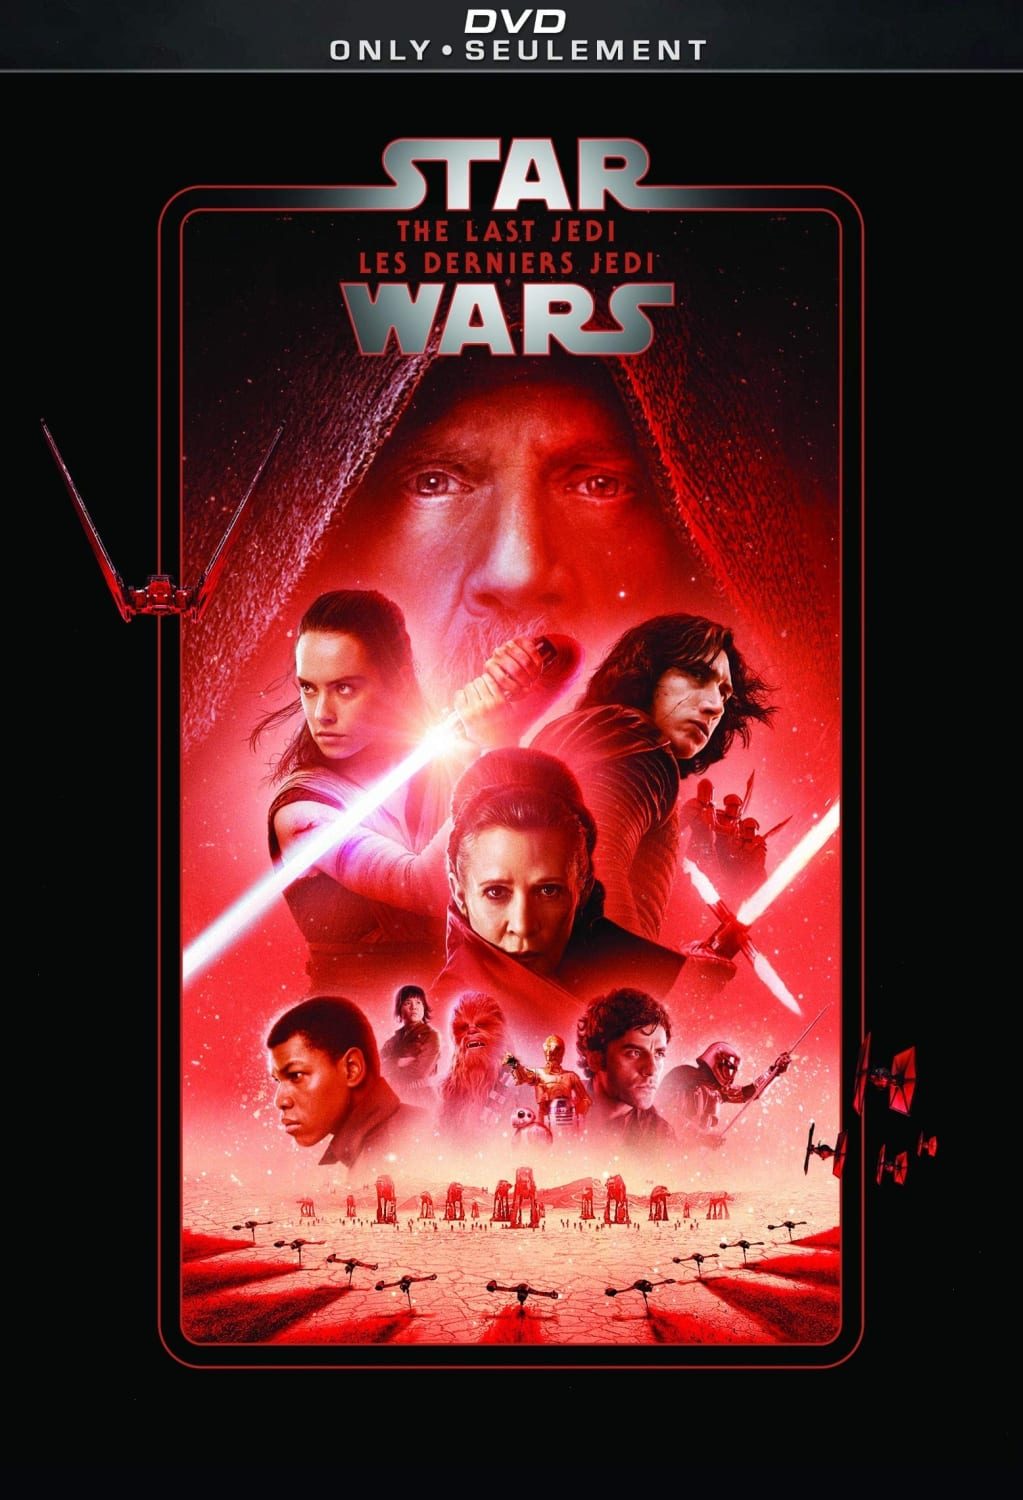 Star Wars – The Last Jedi (DVD)